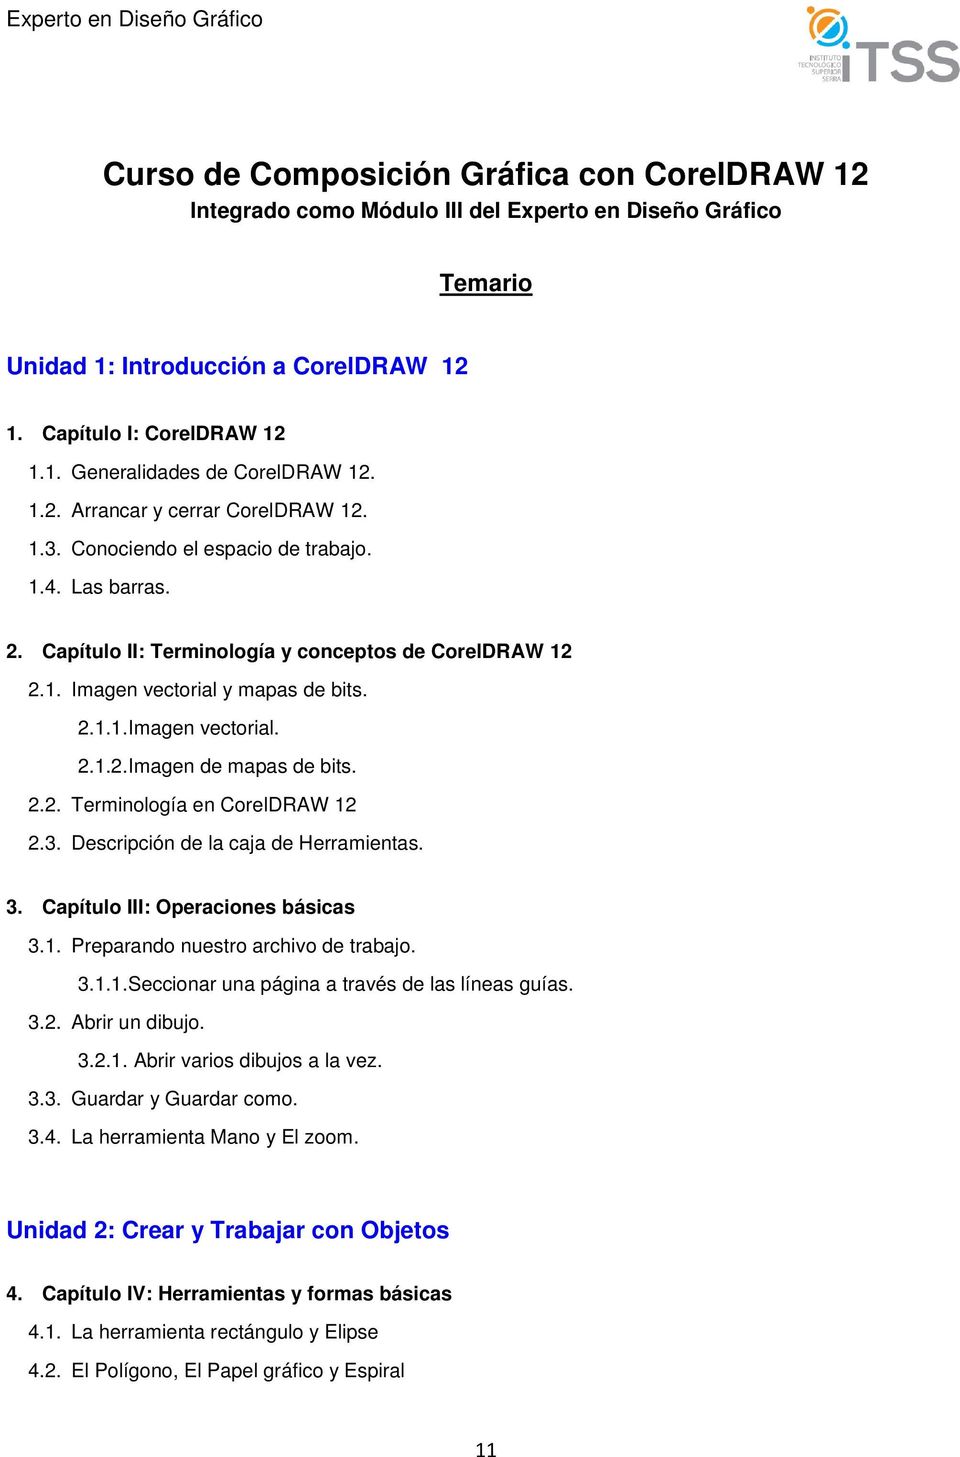 2.2. Terminología en CorelDRAW 12 2.3. Descripción de la caja de Herramientas. 3. Capítulo III: Operaciones básicas 3.1. Preparando nuestro archivo de trabajo. 3.1.1. Seccionar una página a través de las líneas guías.